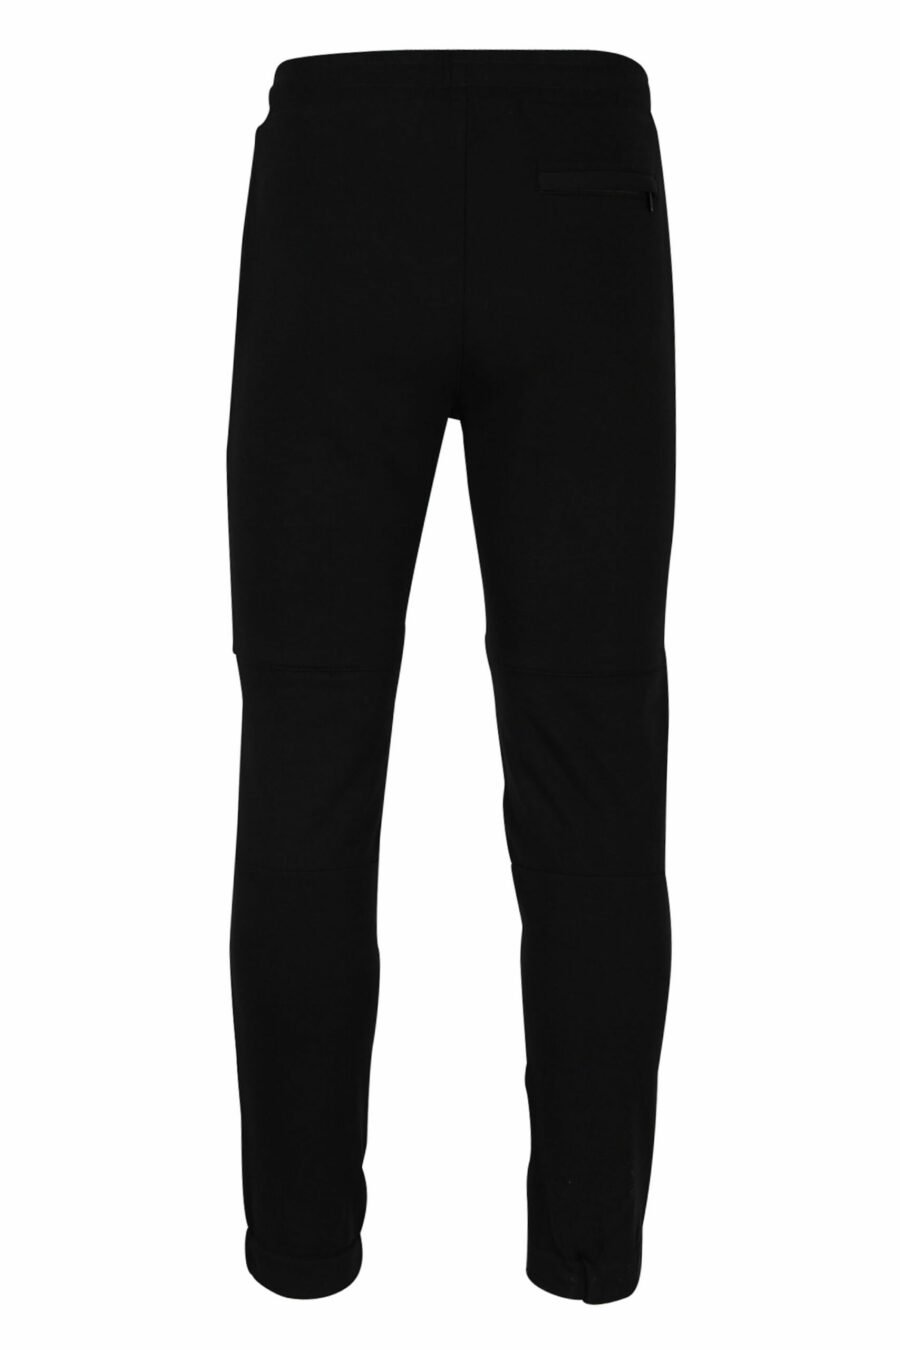 Pantalón de chándal negro con bolsillos de nilon - 4062226390132 2 scaled